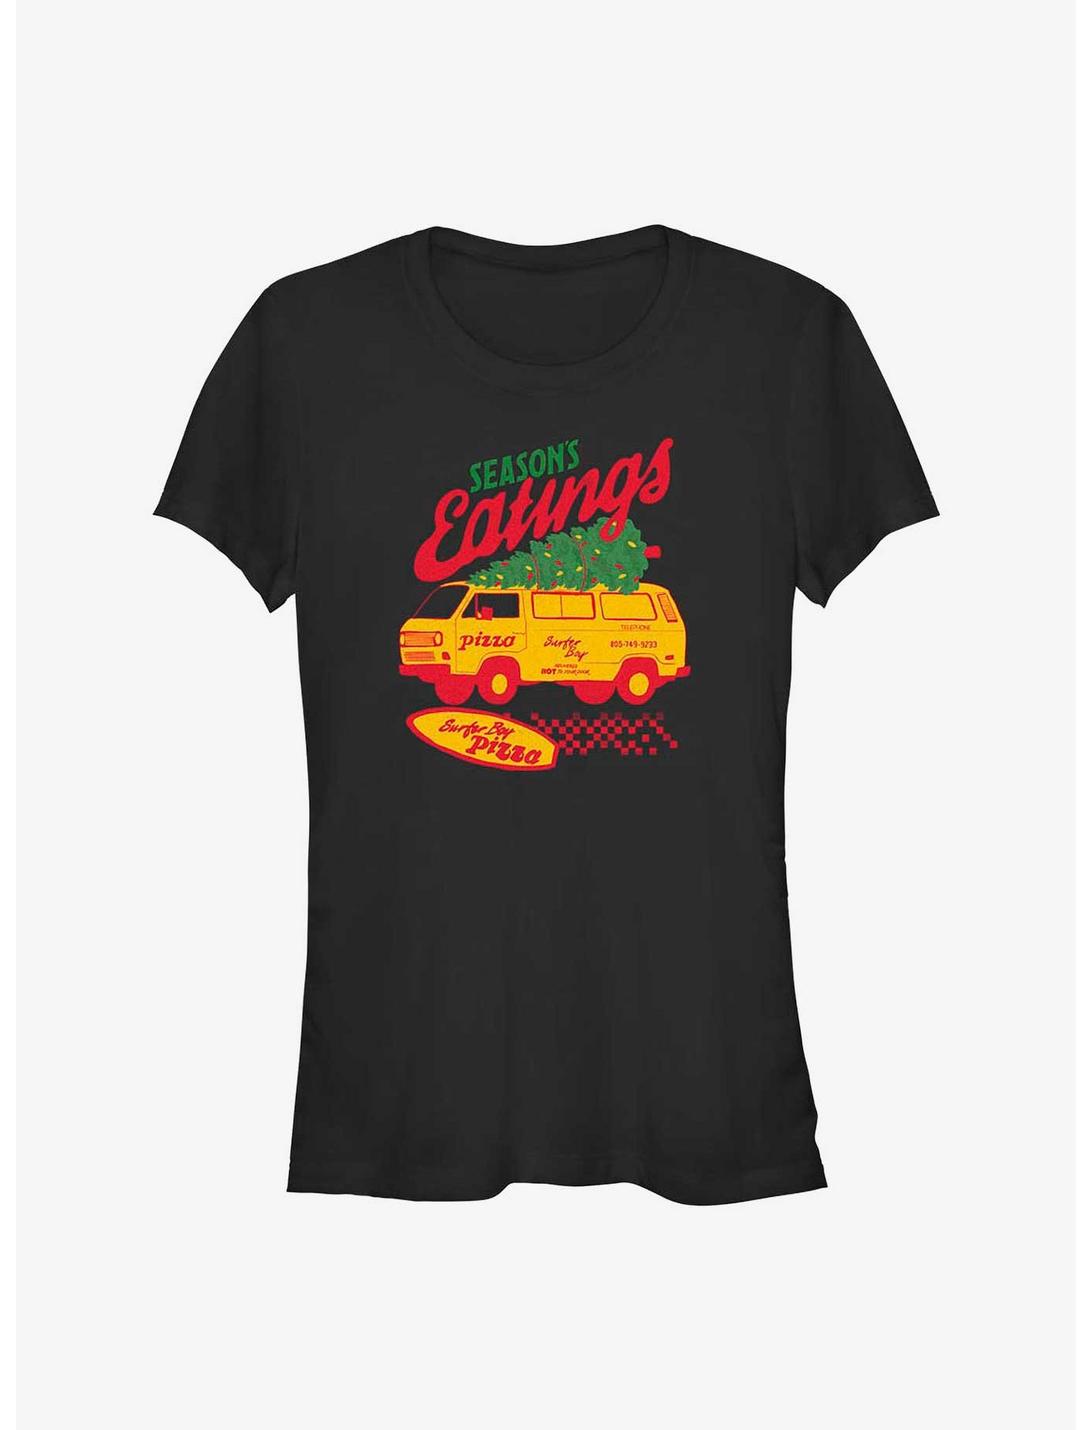 Stranger Things Season's Eatings Surfer Boy Pizza Girls T-Shirt, BLACK, hi-res